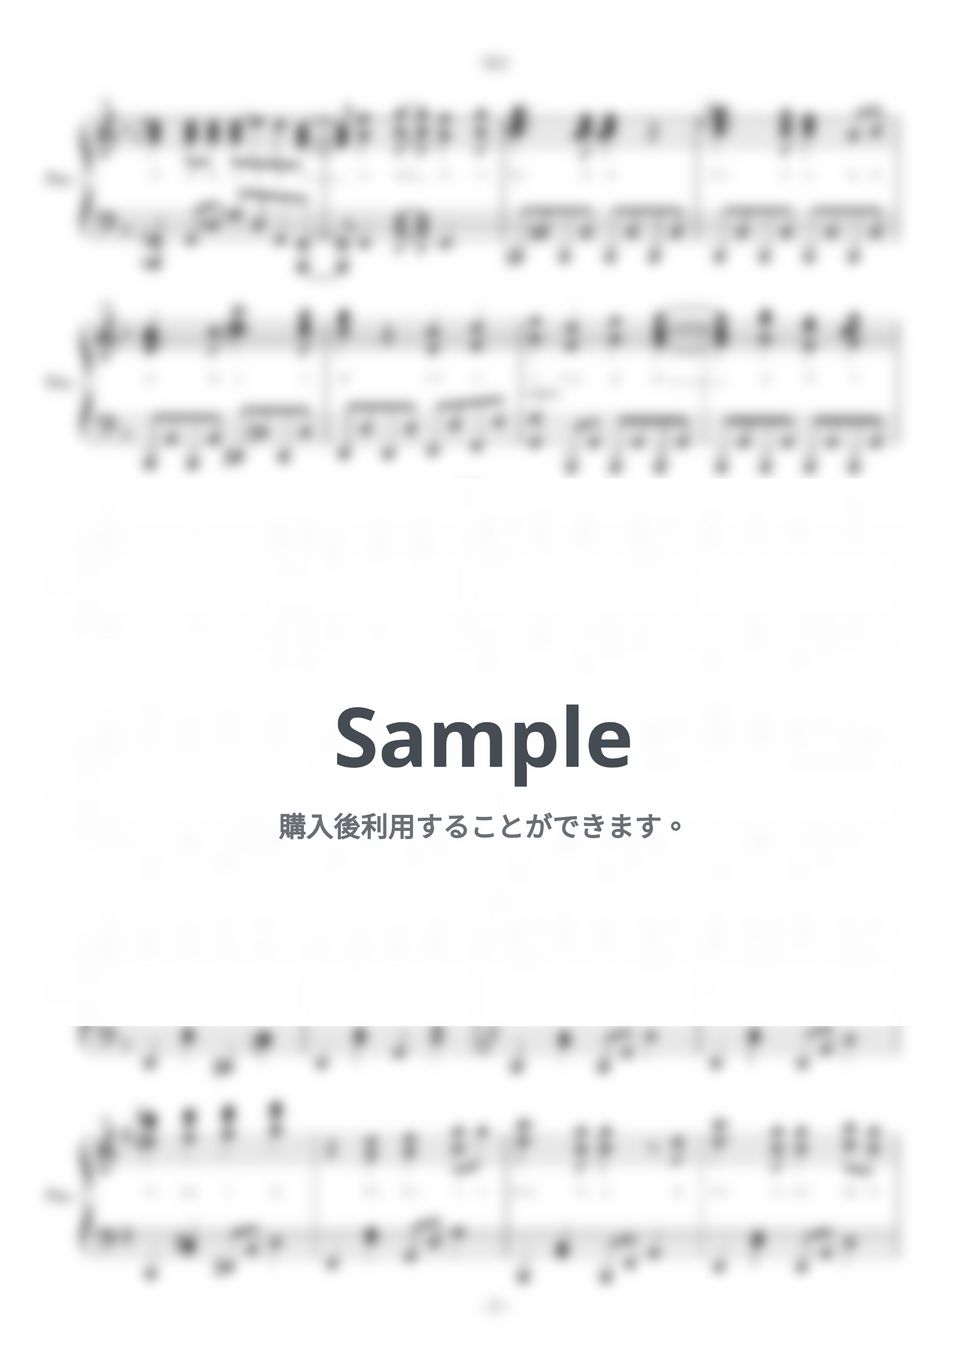 じん - NEO (ピアノ楽譜/全6ページ) by yoshi